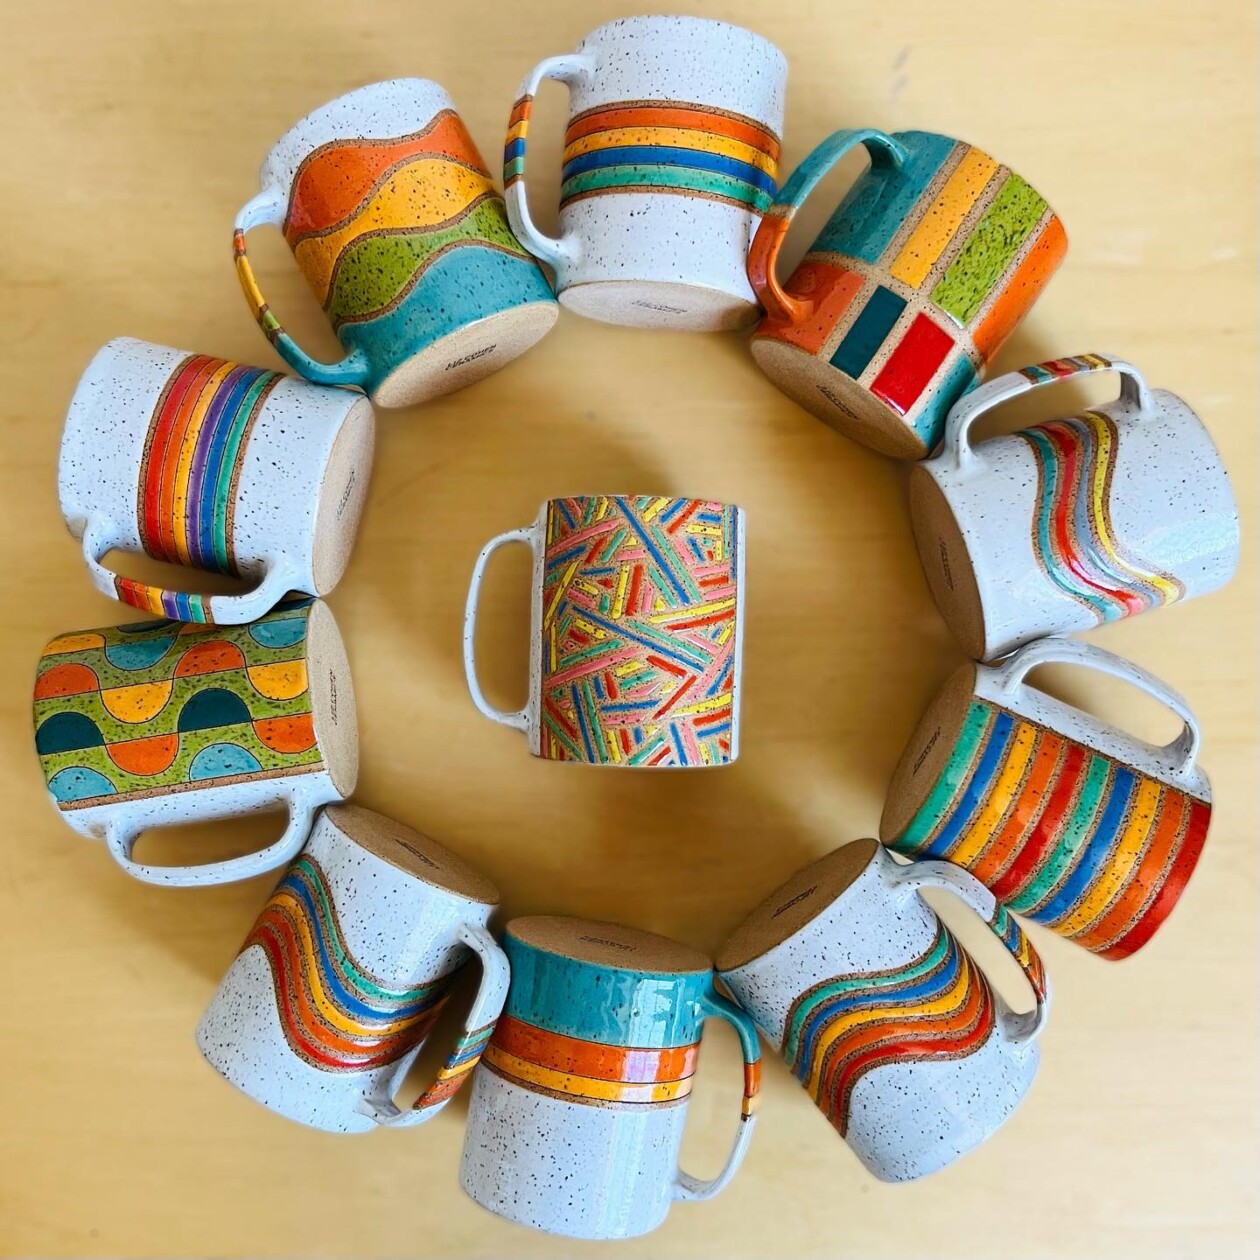 Colorful Ceramics By Liz Cohen (17)